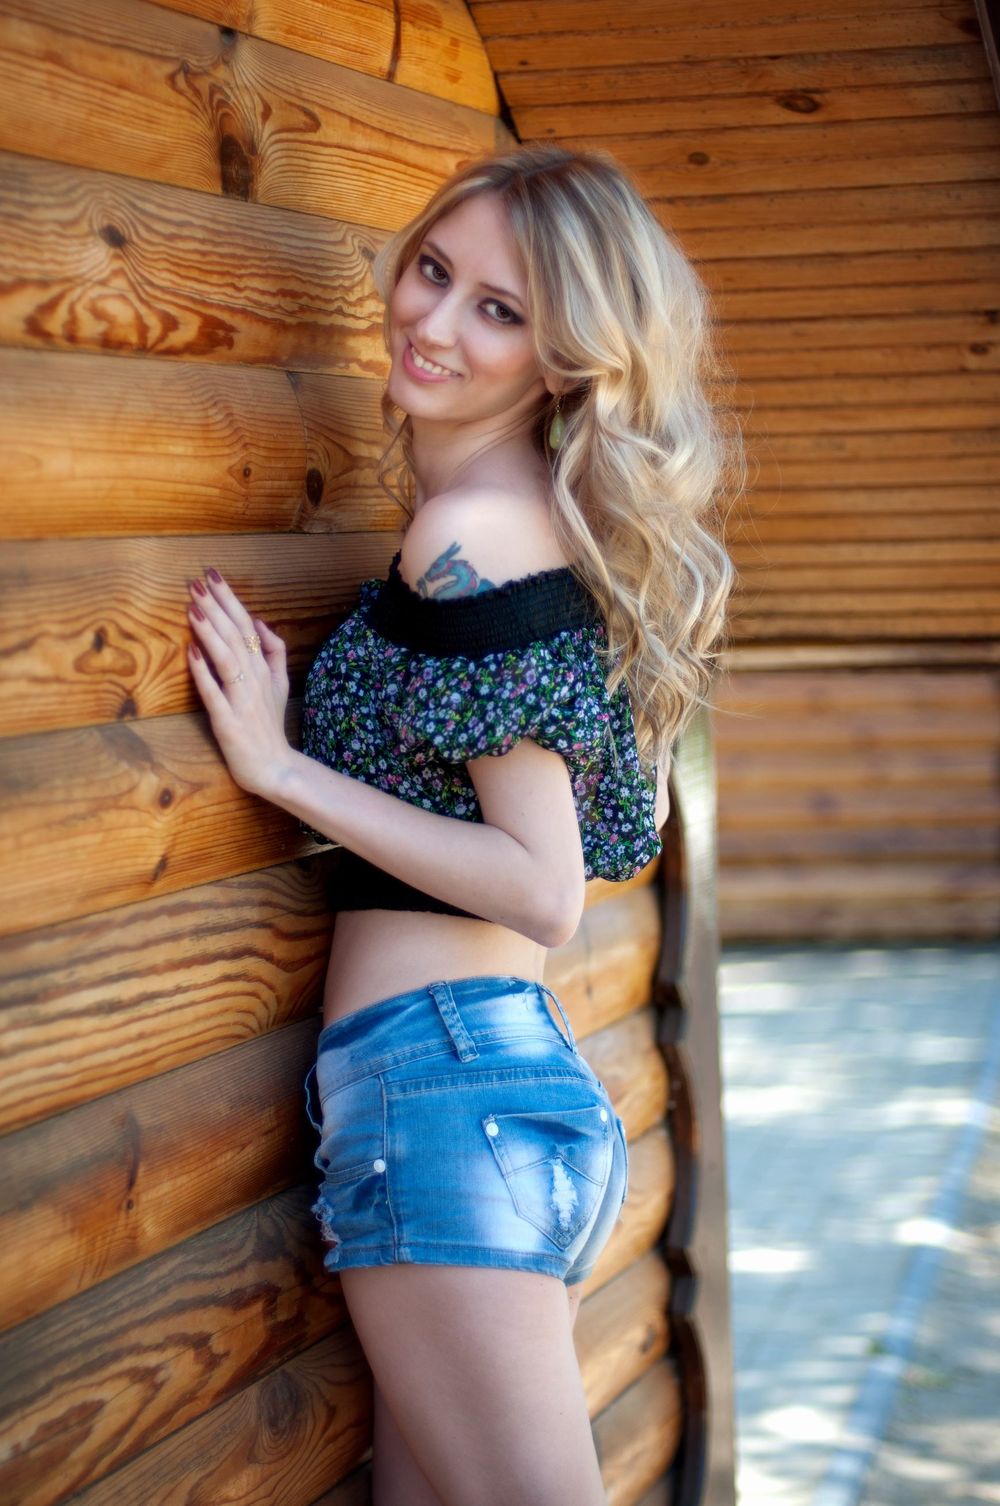 ID 47162 Lolita From Kherson Ukraine 31 Years Old Blonde